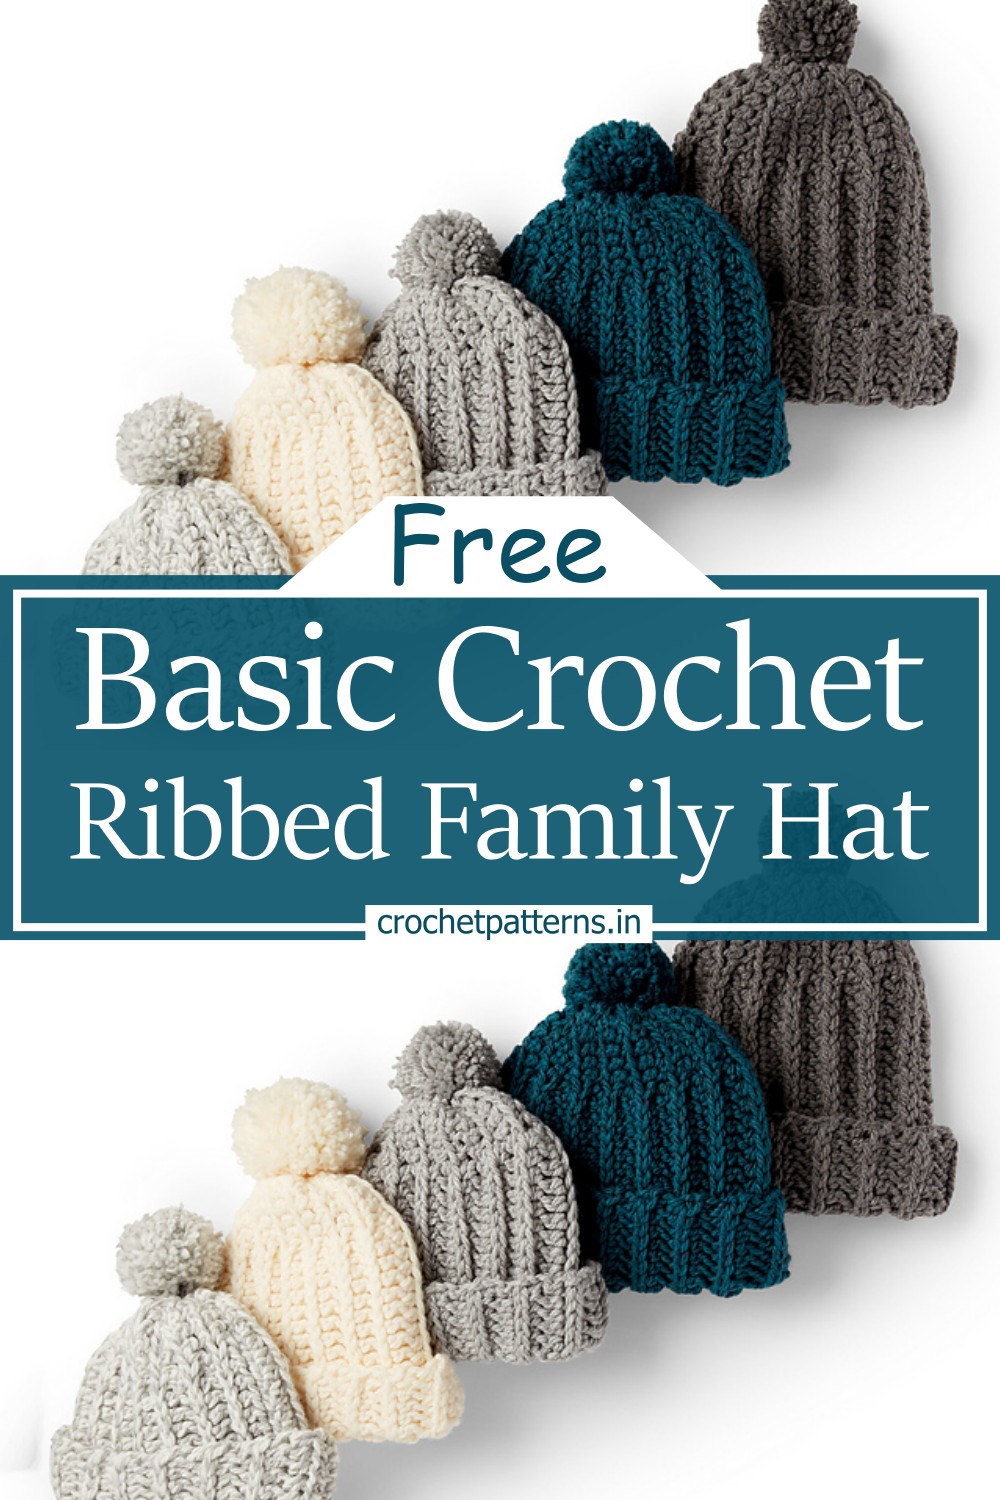 Basic Crochet Ribbed Family Hat